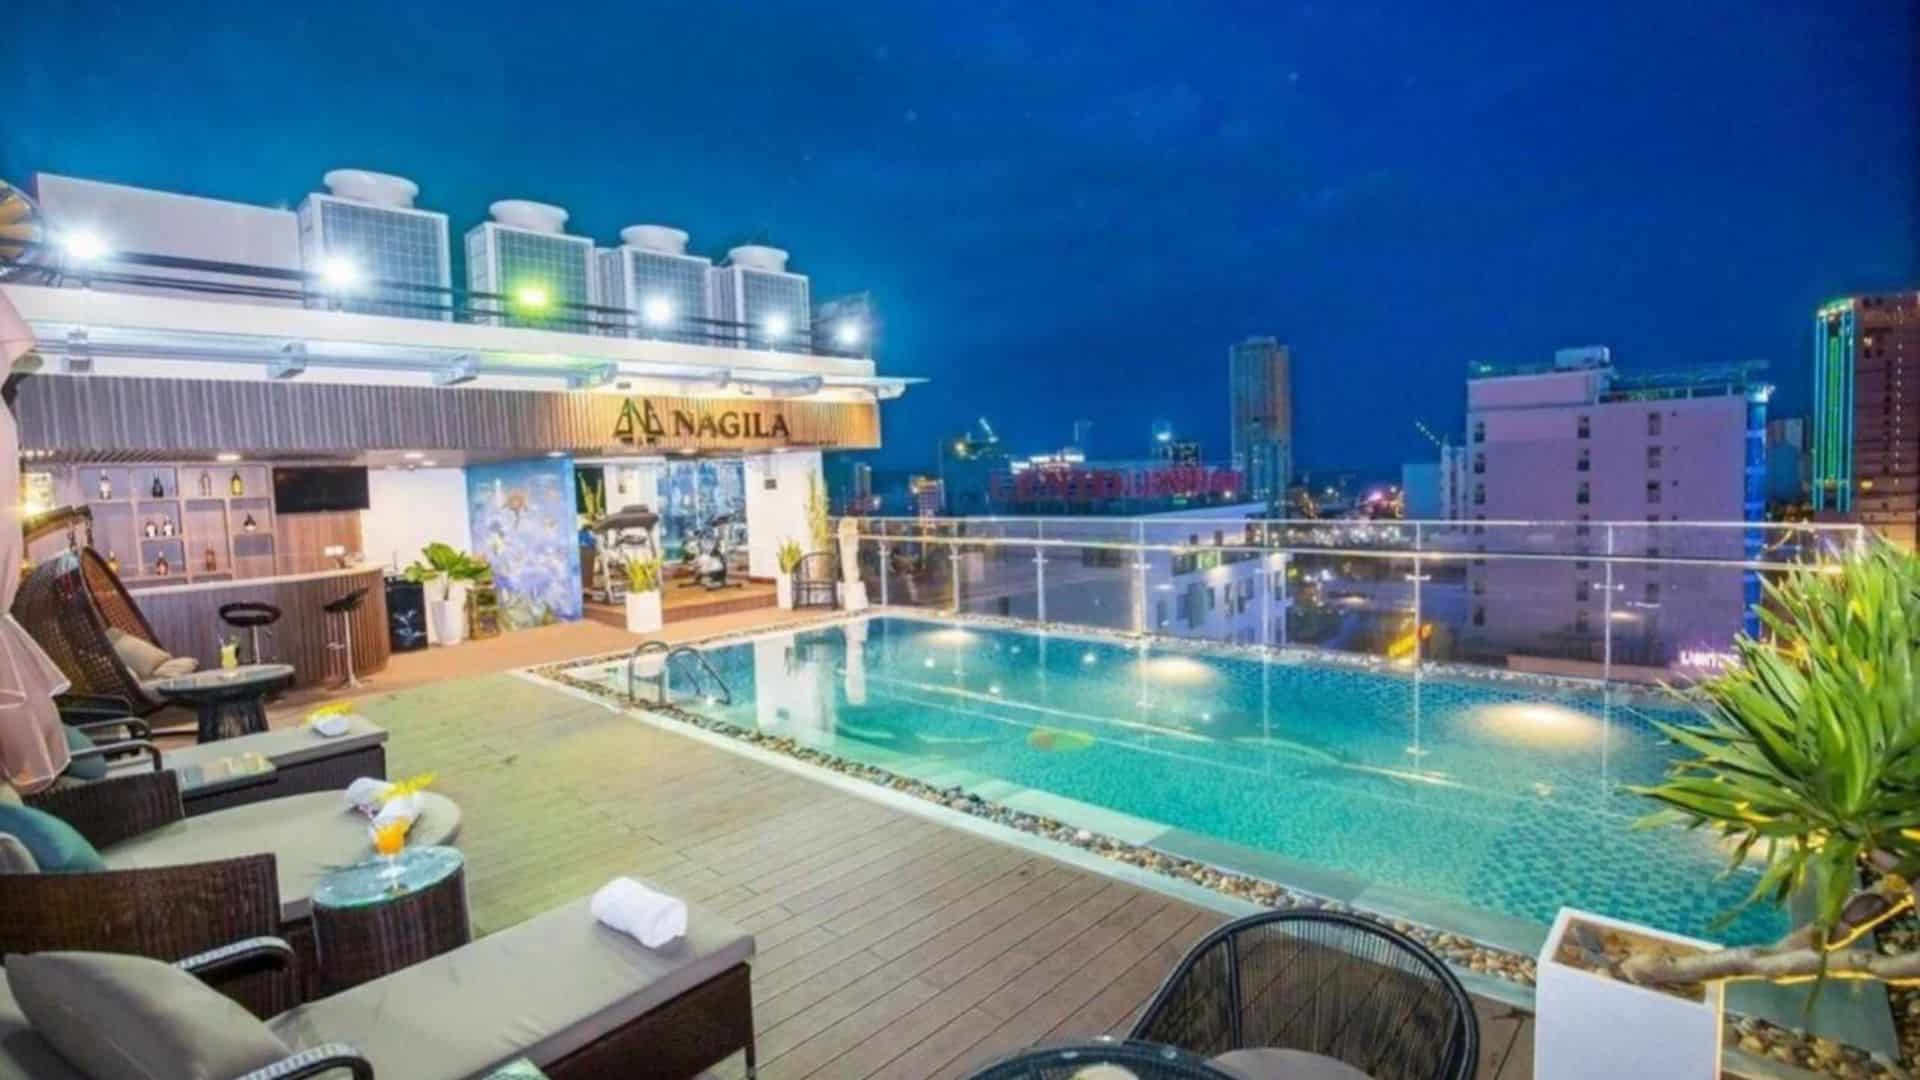 Nagila Boutique Hotel - Địa chỉ hotel Đà Nẵng gần biển giá tốt